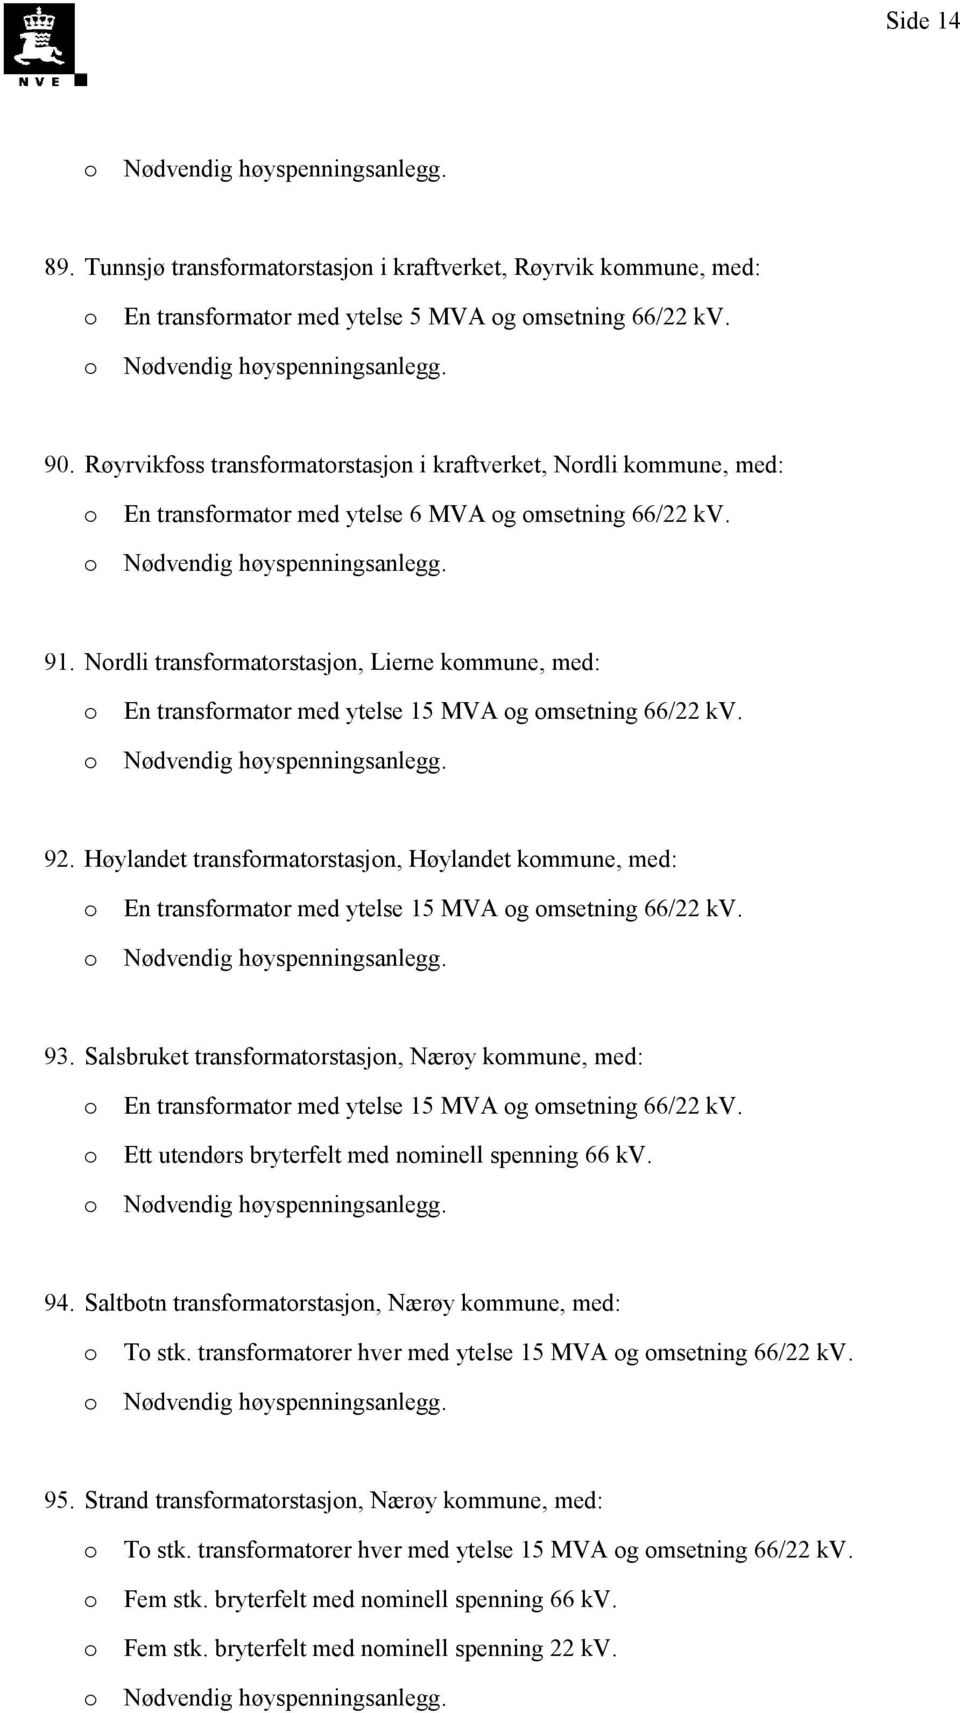 Nrdli transfrmatrstasjn, Lierne kmmune, med: En transfrmatr med ytelse 15 MVA g msetning 66/22 kv. 92.